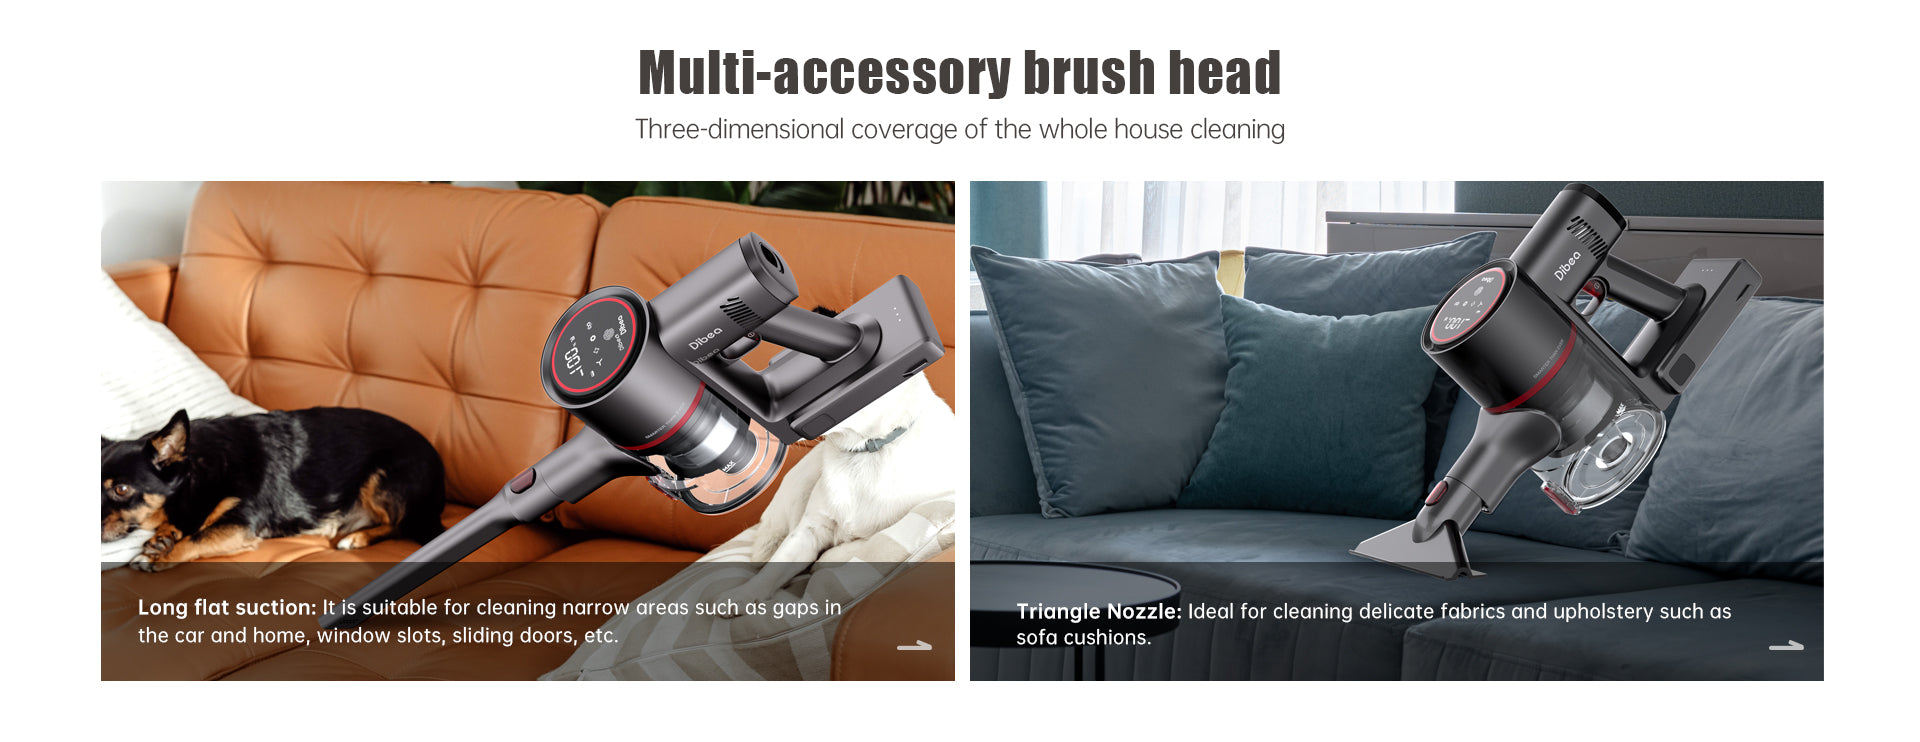 Multi-accessory_brush_head